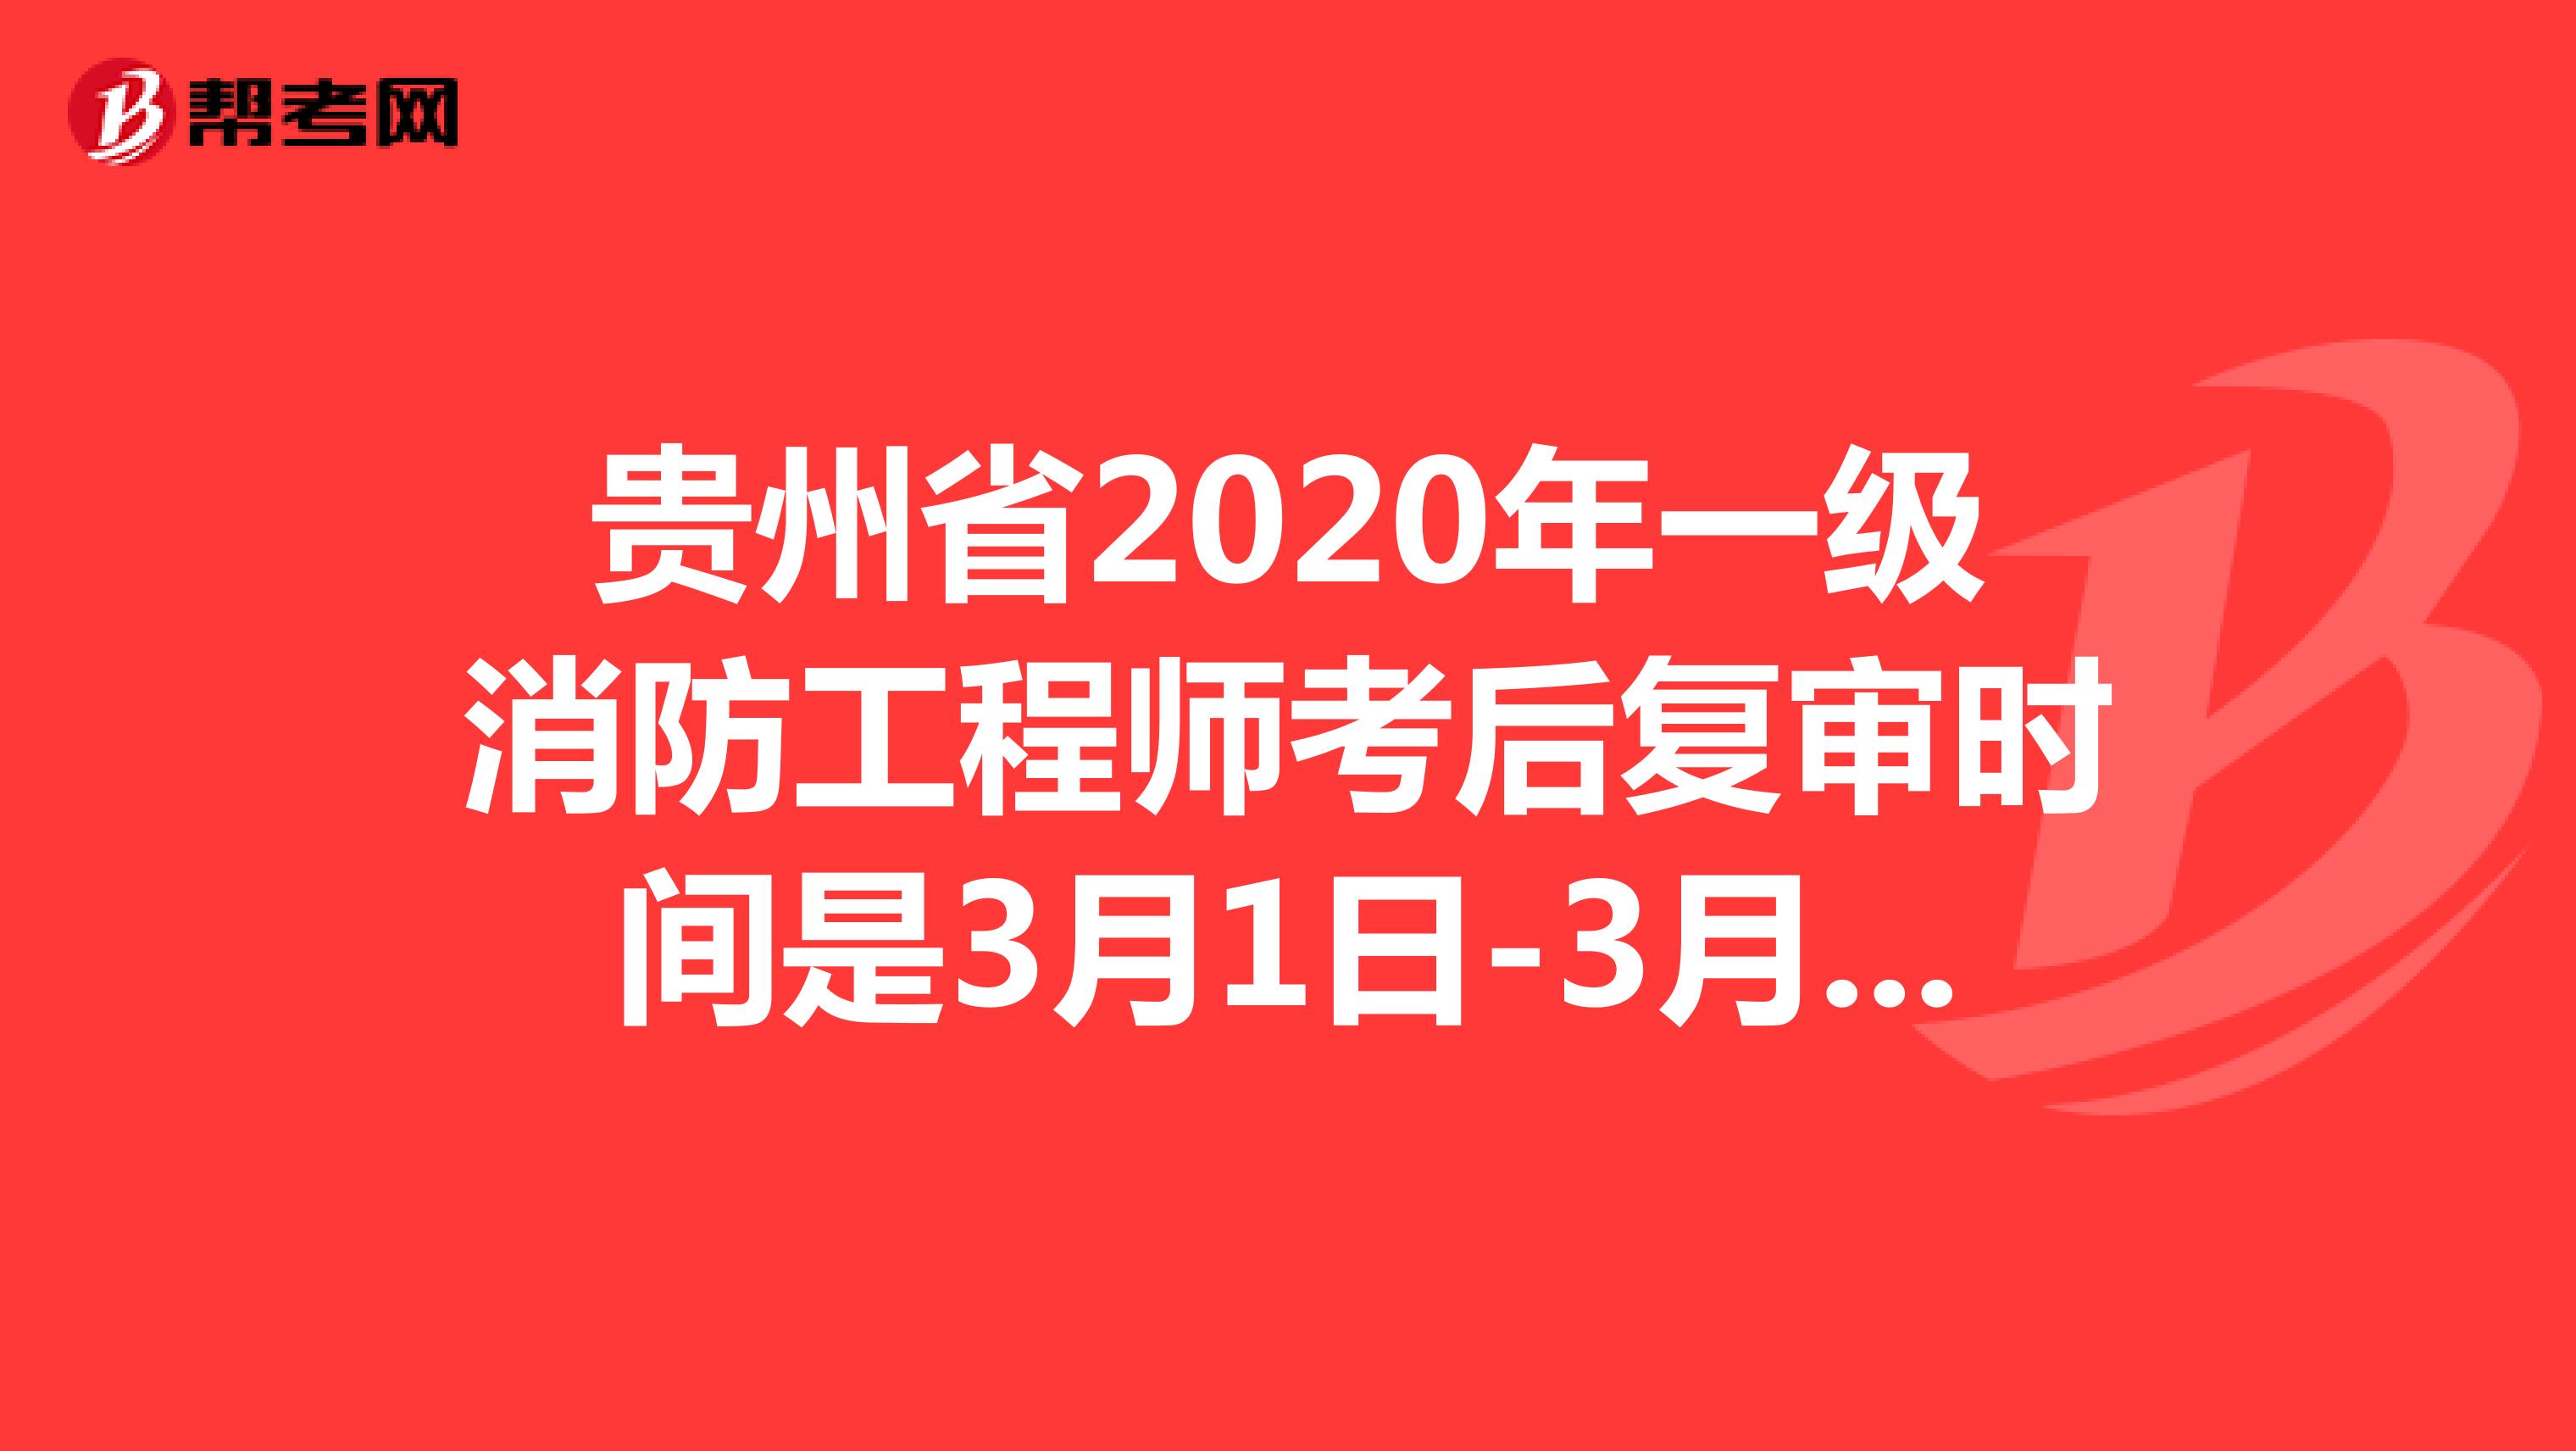 贵州省2020年一级消防工程师考后复审时间：3月1日-3月12日